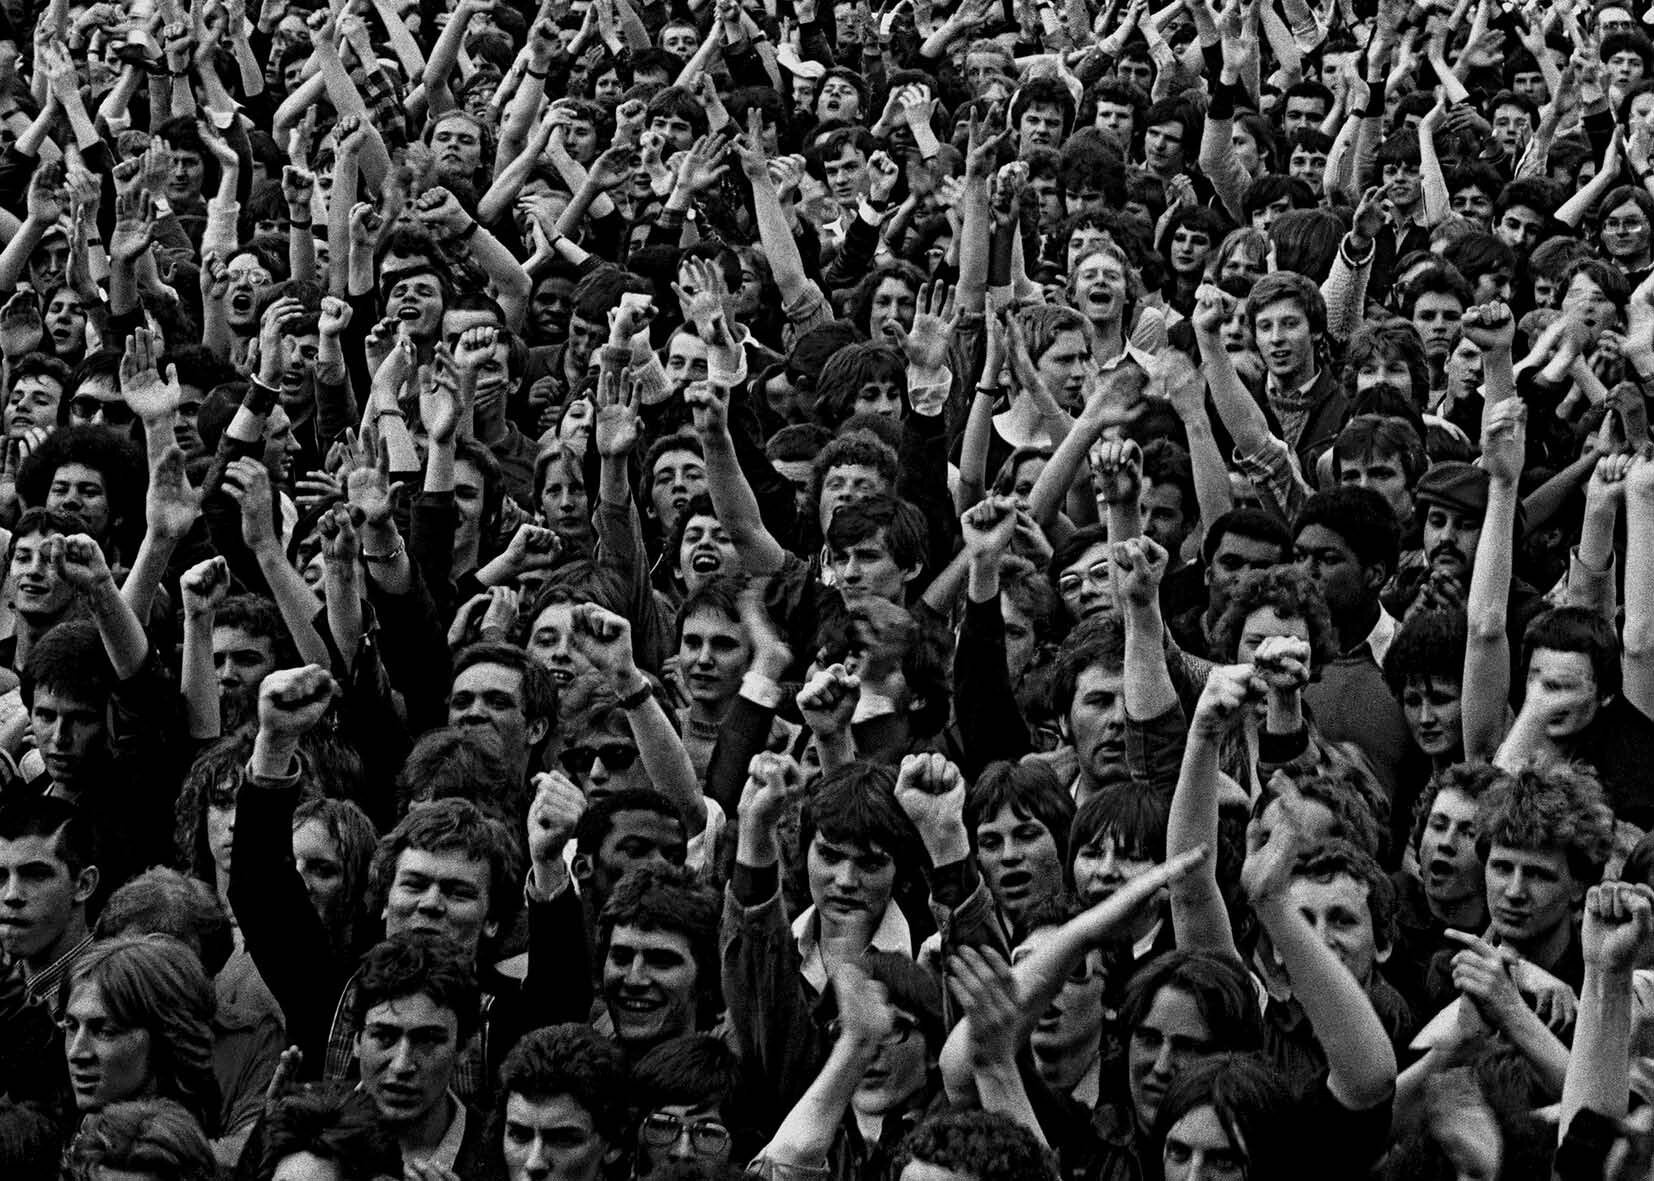 Syd Shelton — Crowds 1977-1981